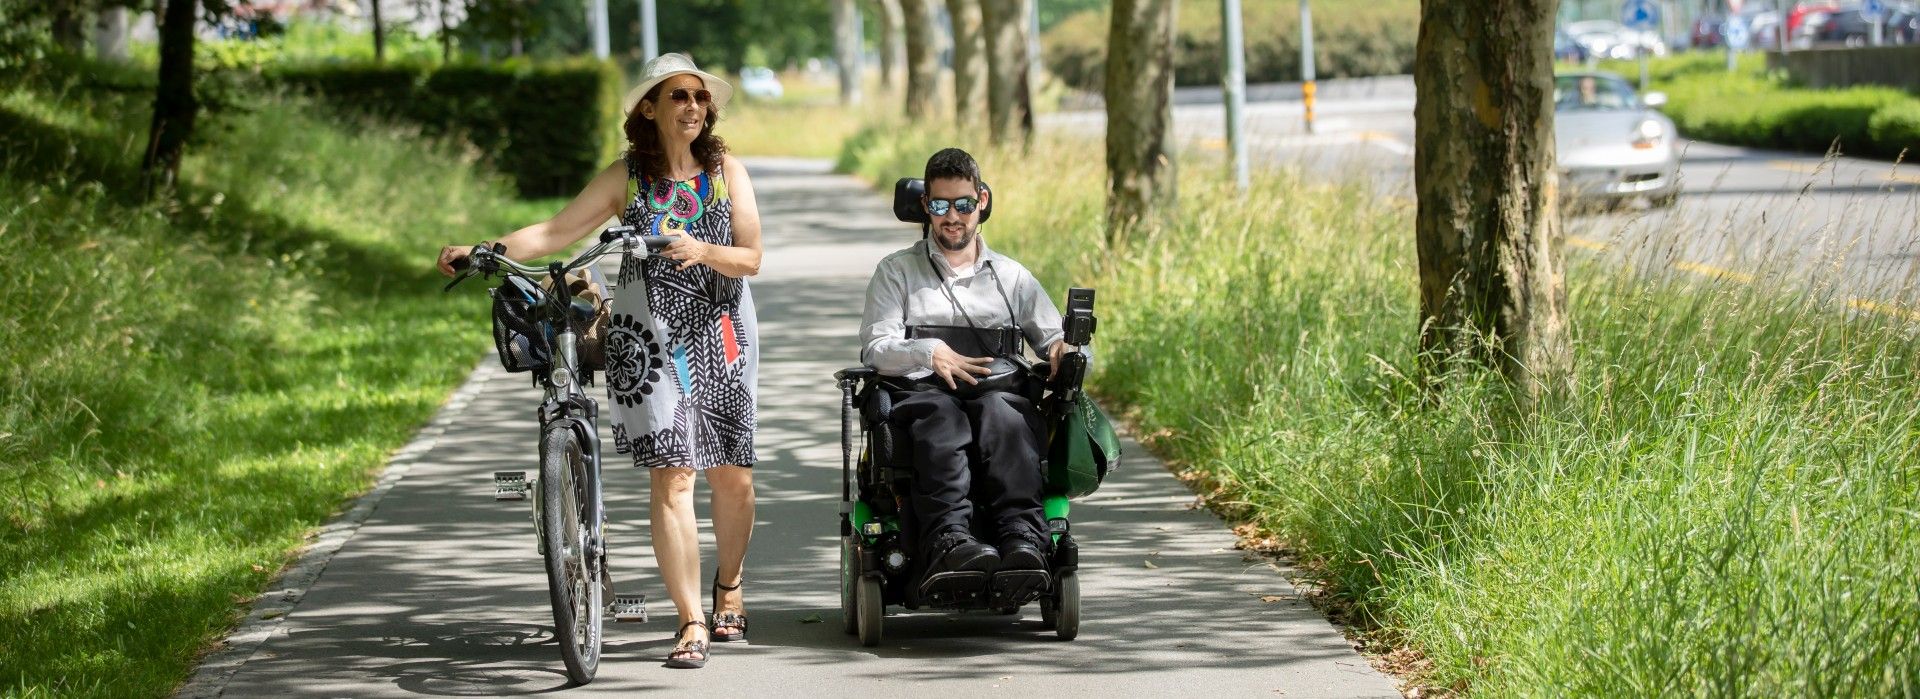 Un giovane in sedia a rotelle è accompagnato da una donna in bicicletta